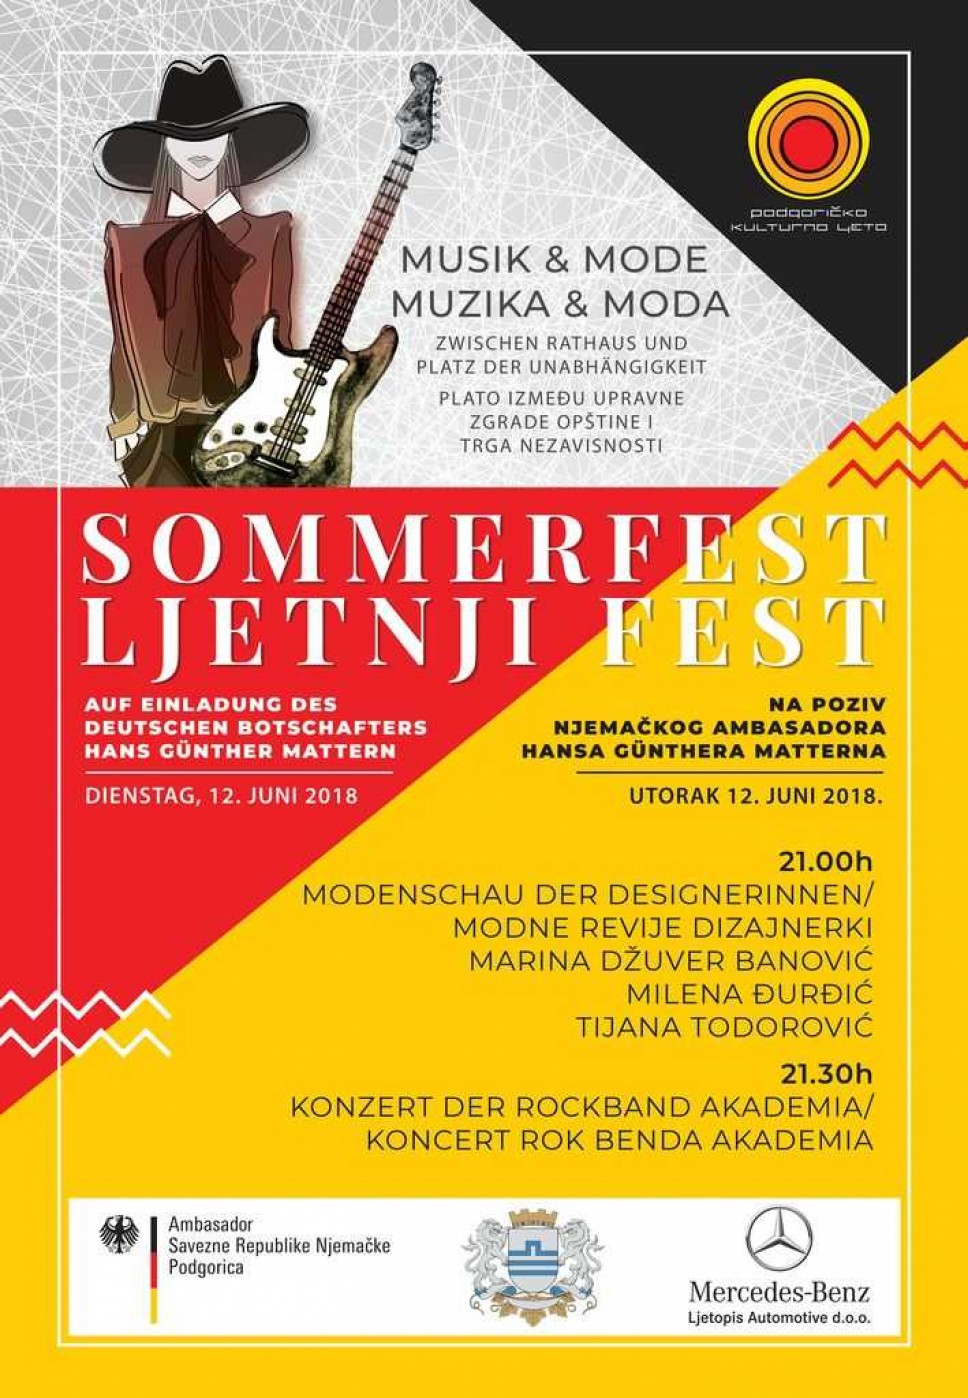 Sommerfest Musik & Mode